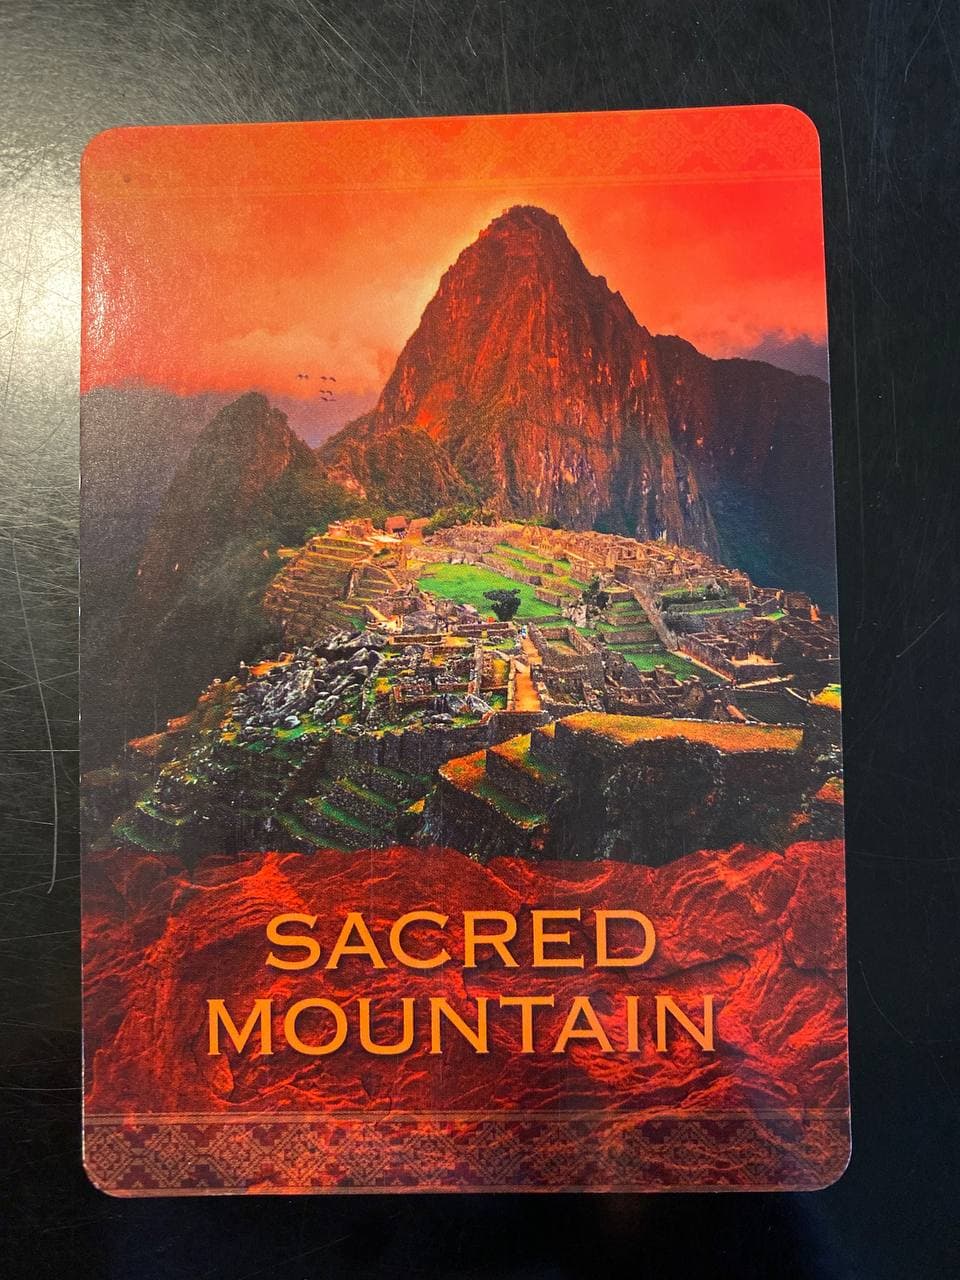 "Sacred Mountain" from Denise Linn's "Native Spirit" deck